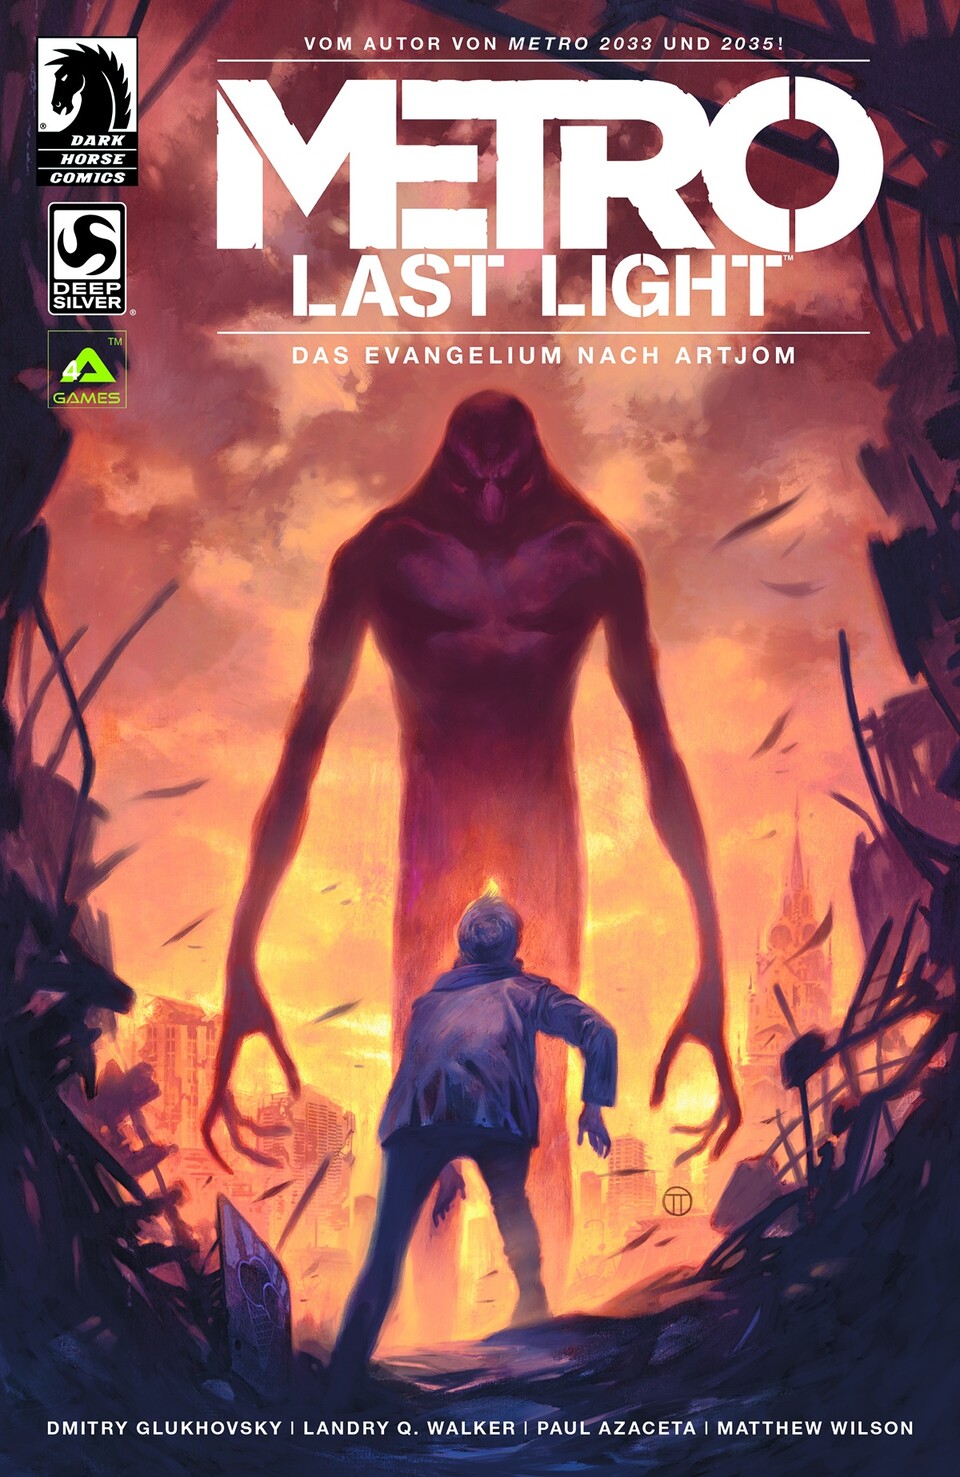 Vorbesteller bei Amazon und Steam erhalten den Metro: Last Light Comic zum Spiel.